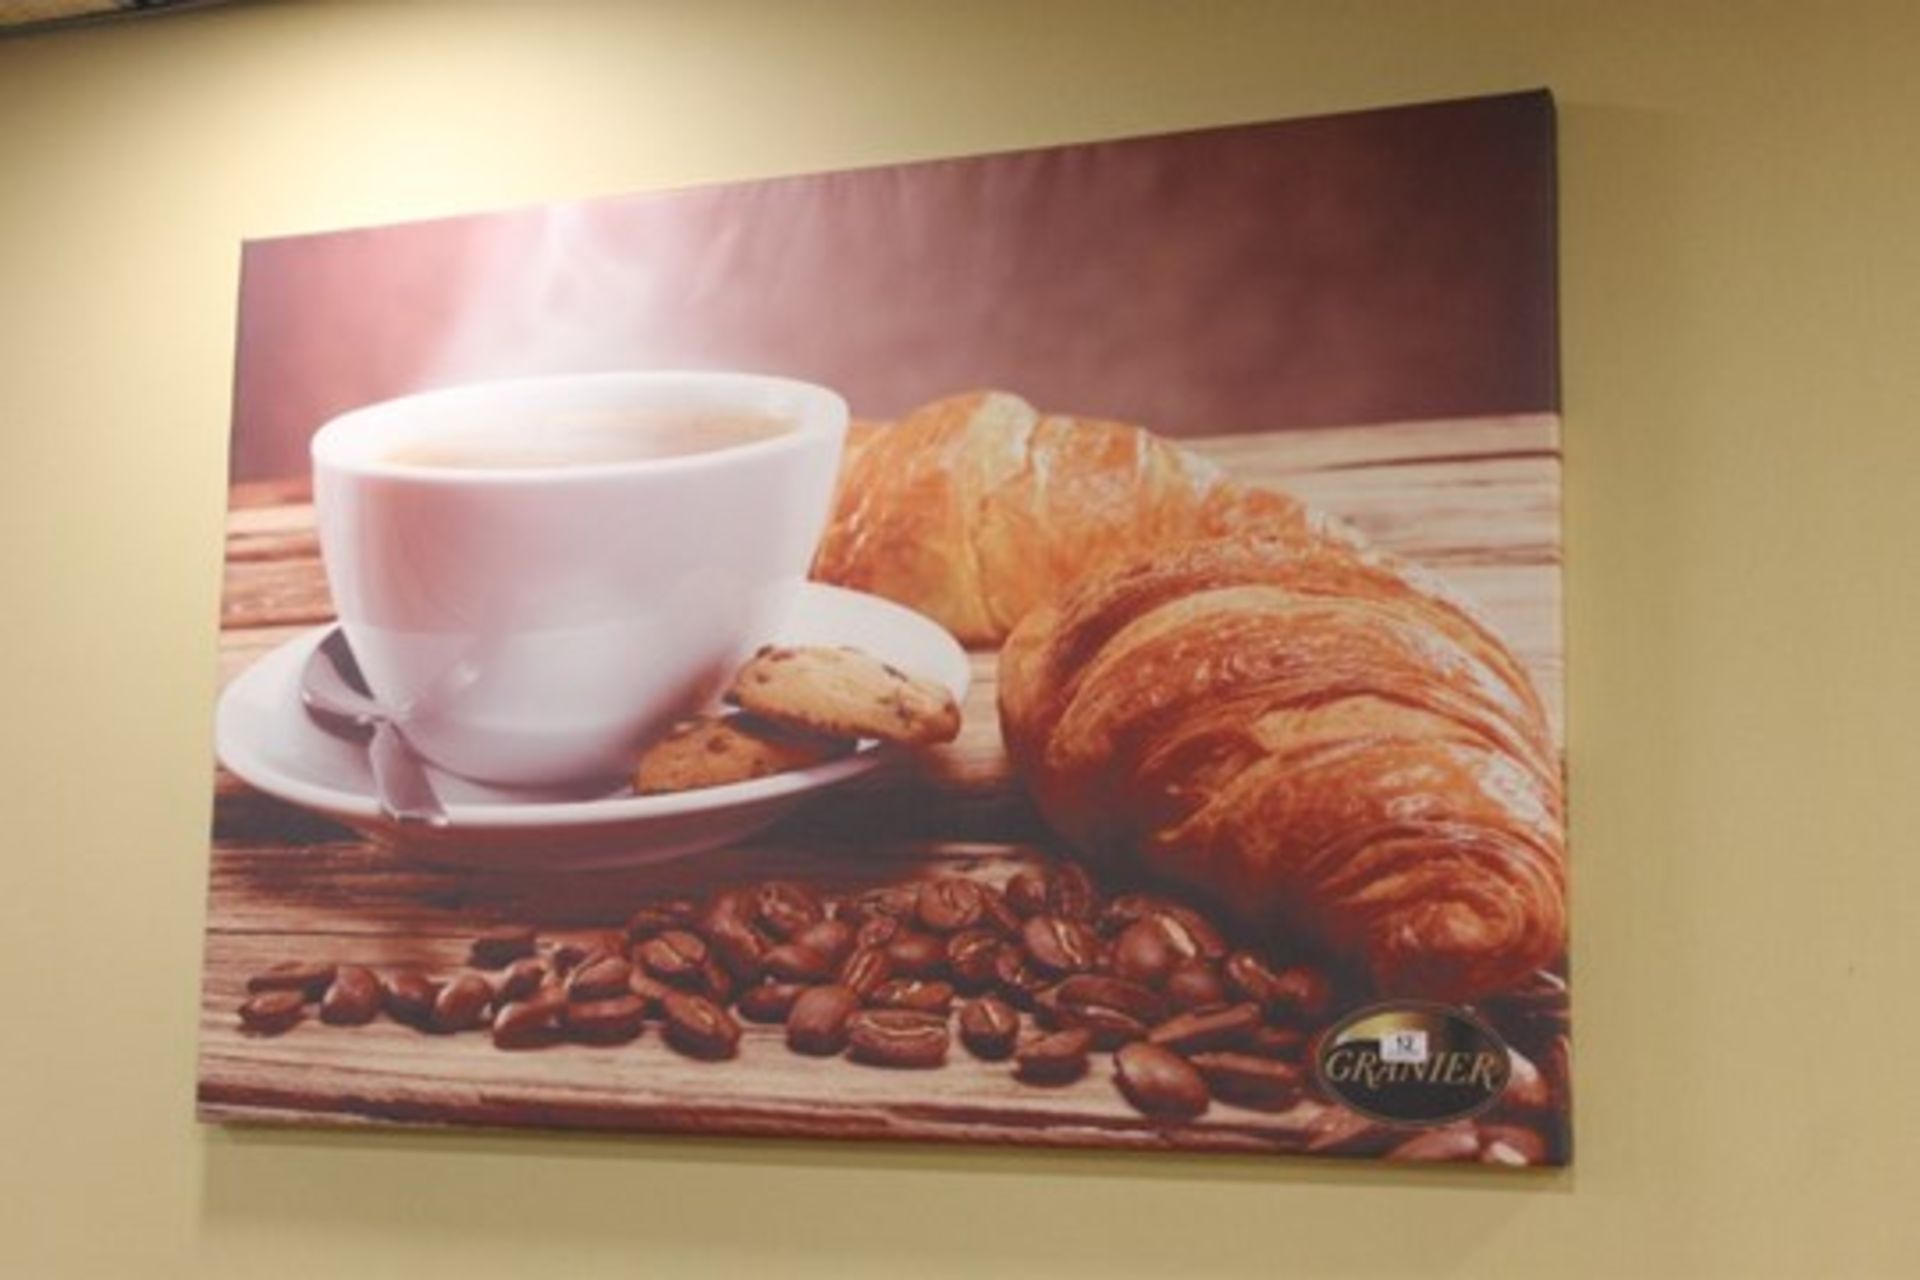 Four Bakery / Café Canvas Wall Prints -W130cm x H90cm - Image 3 of 4